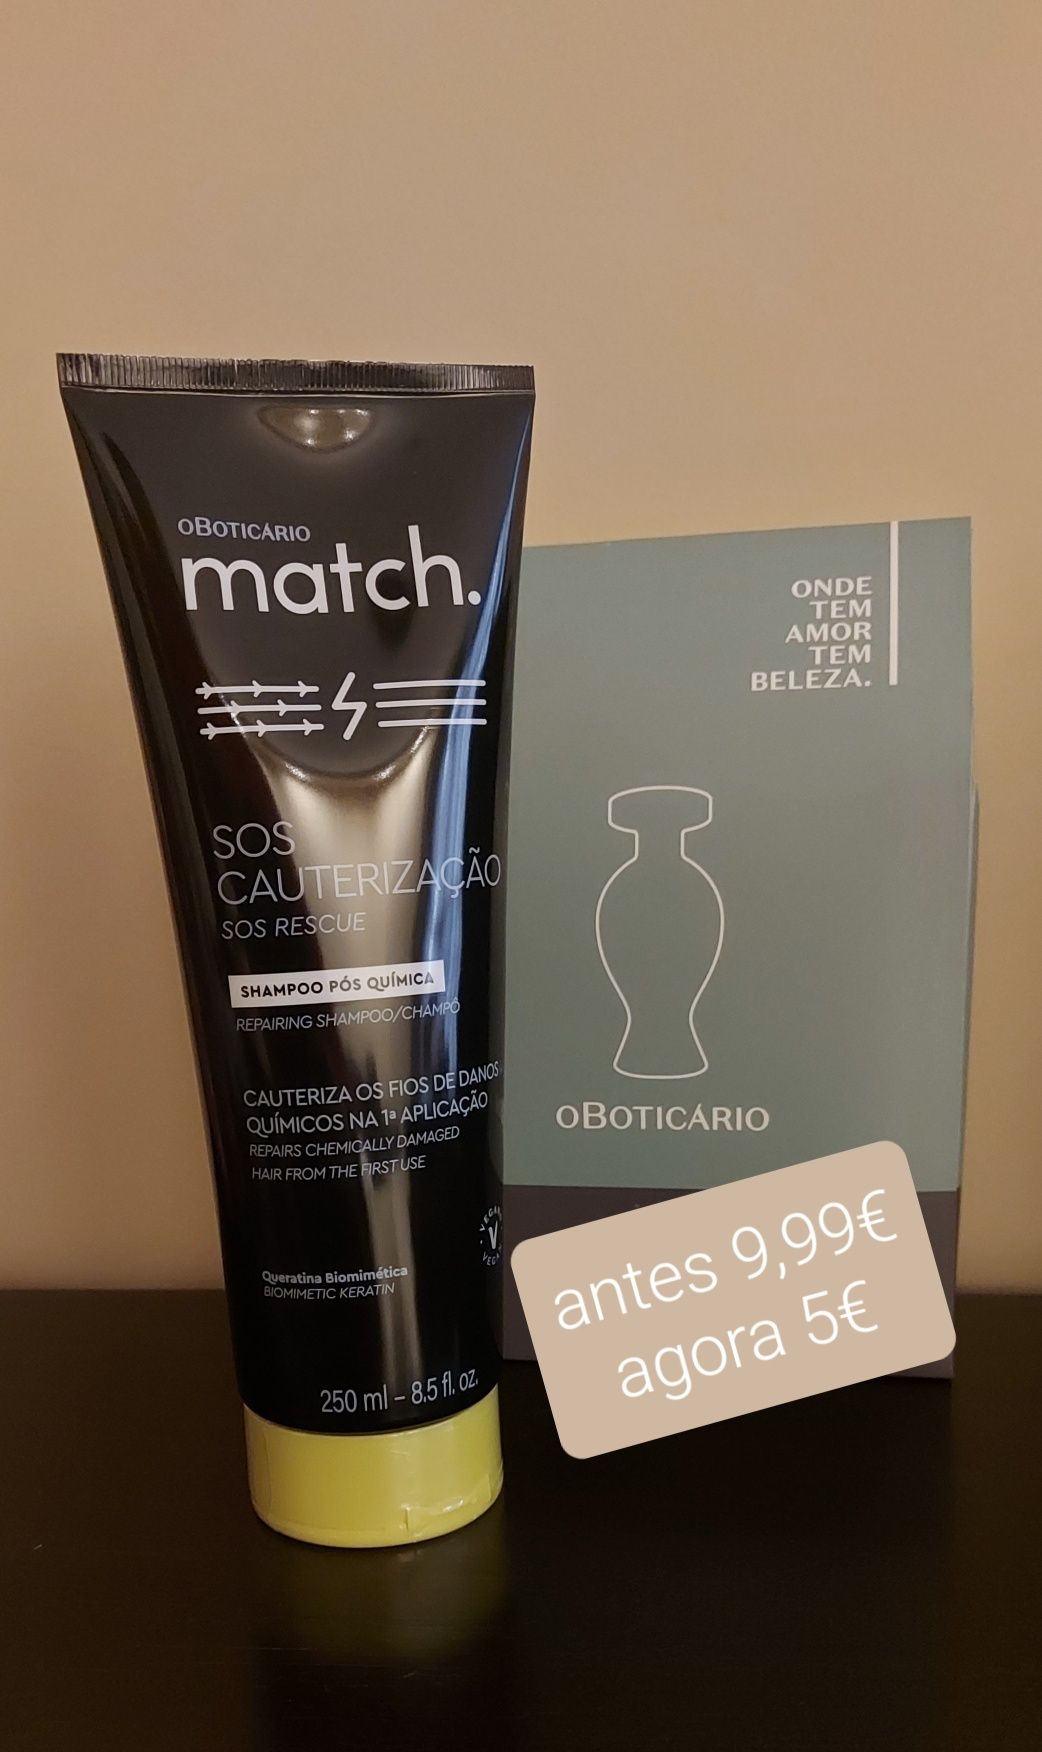 Shampoo match da boticário